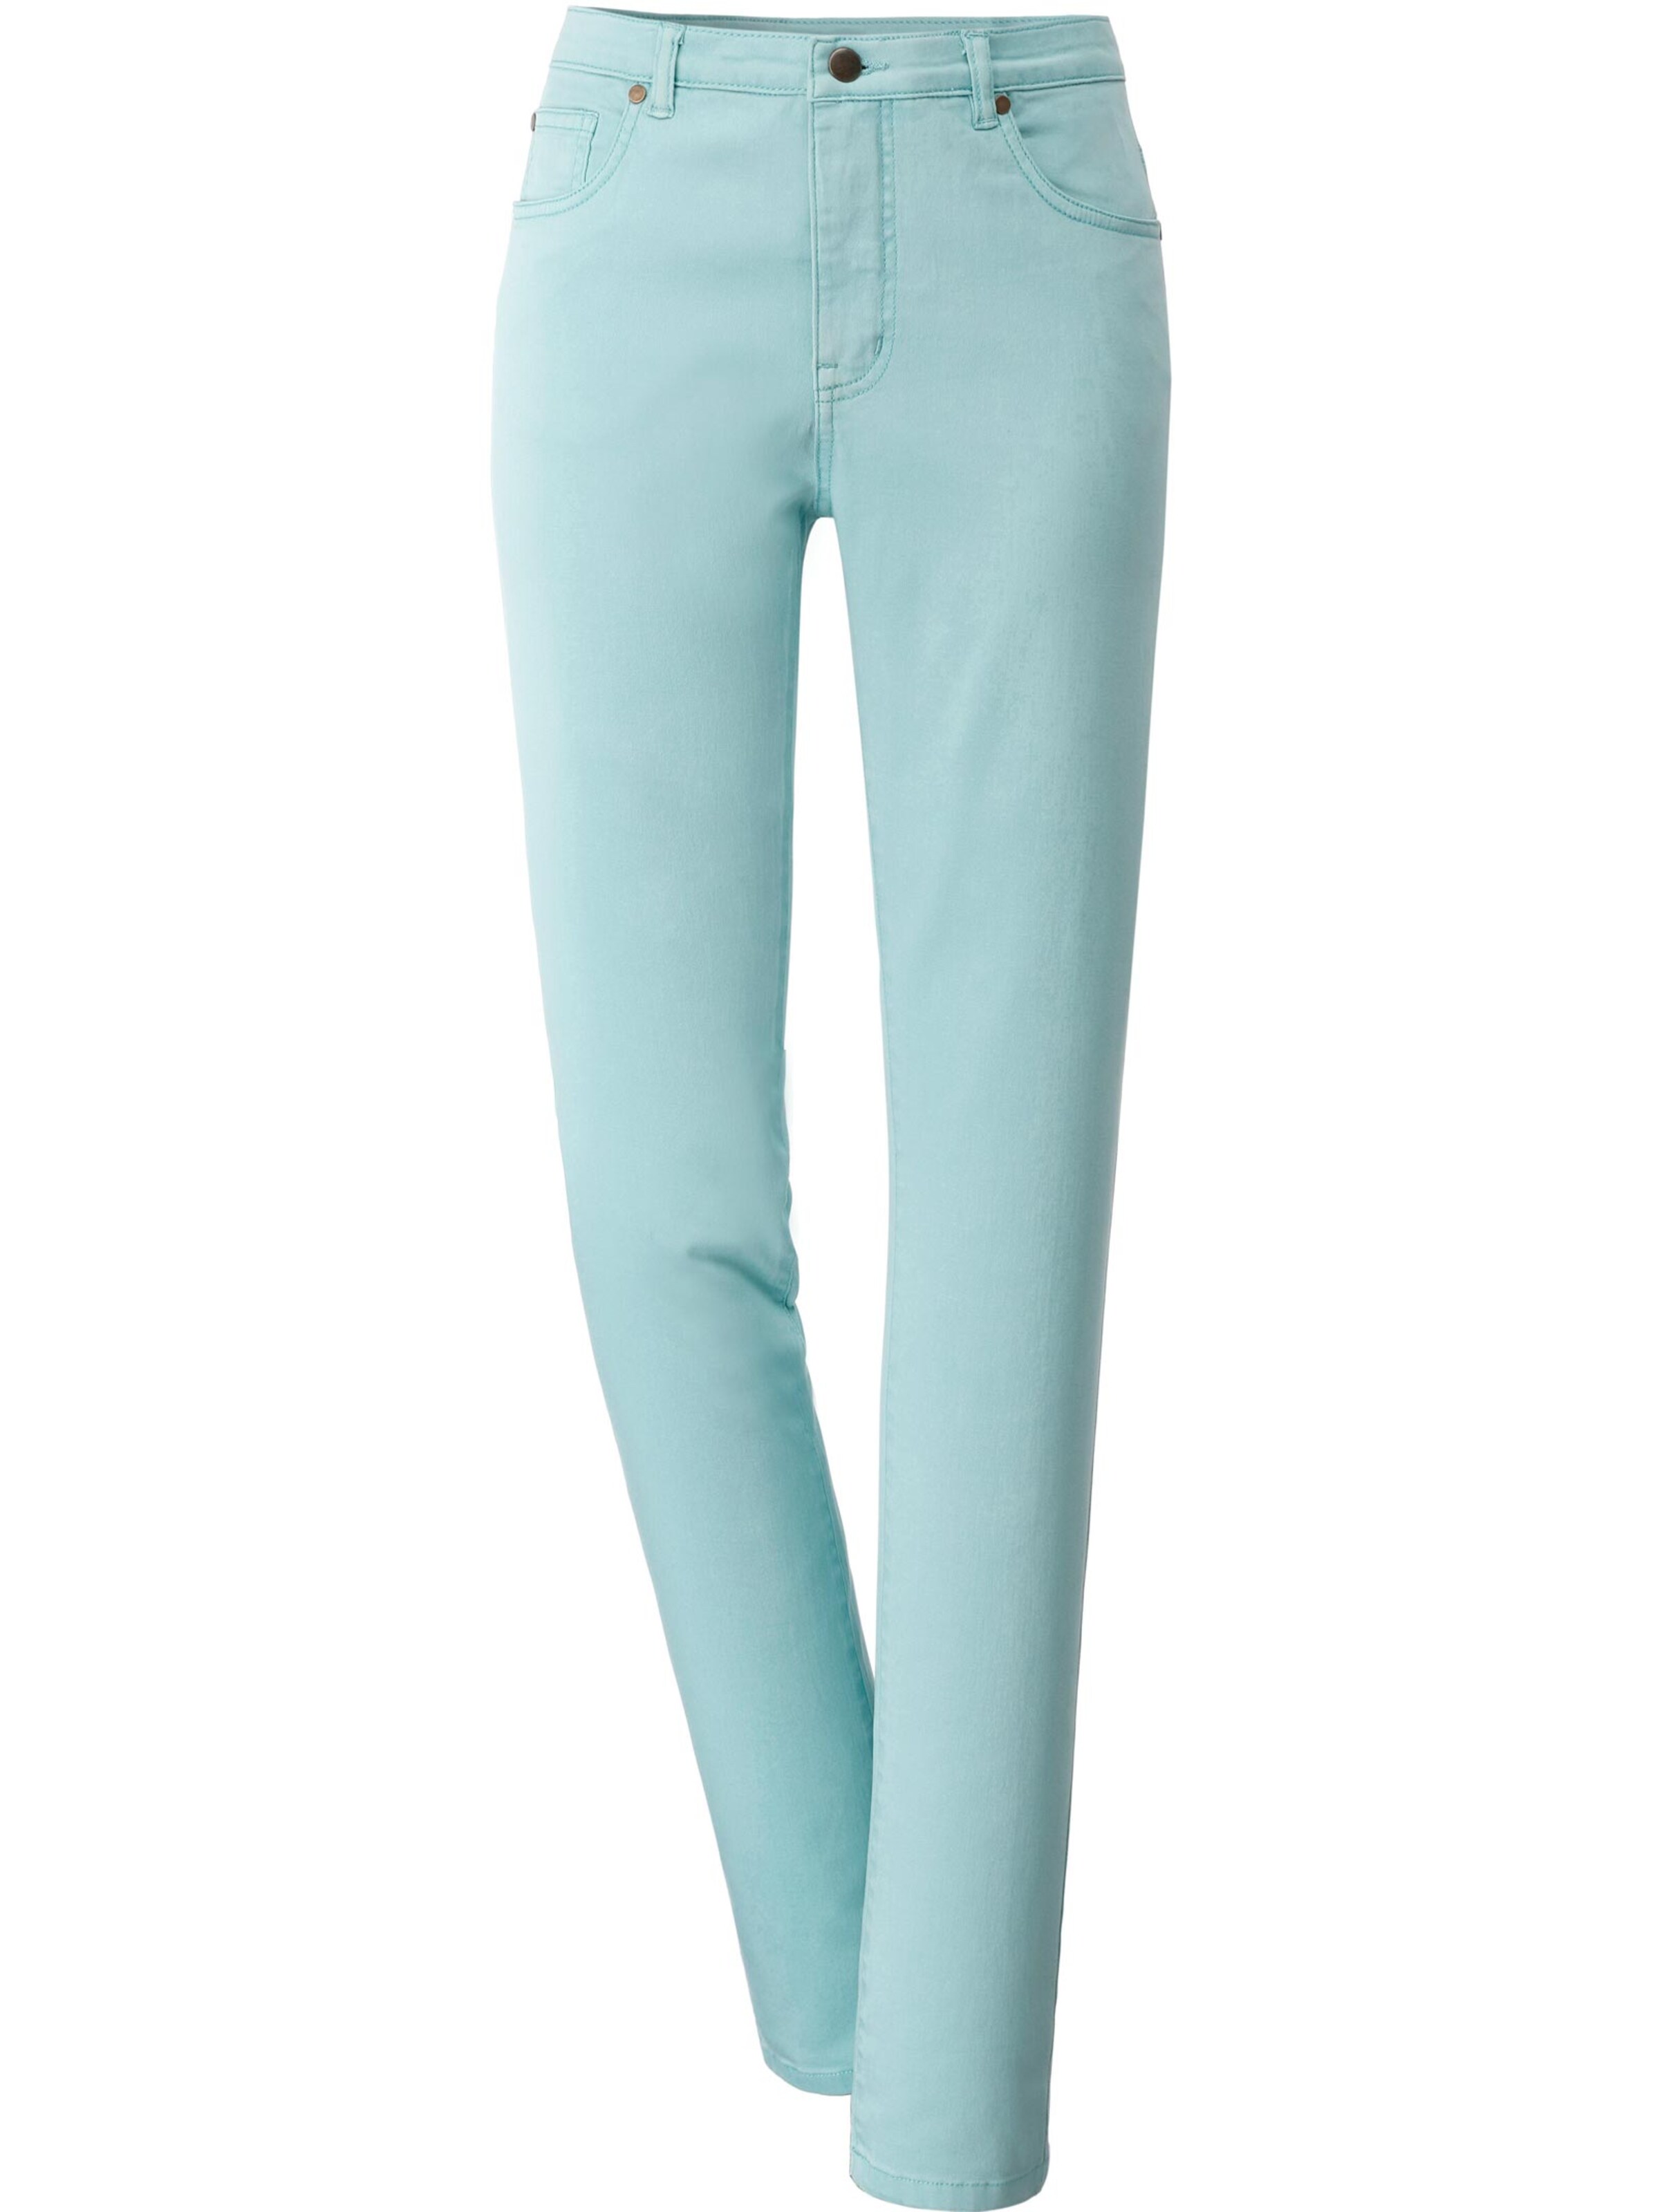 Damenmode Jeans 5-Pocket-Jeans in aqua 